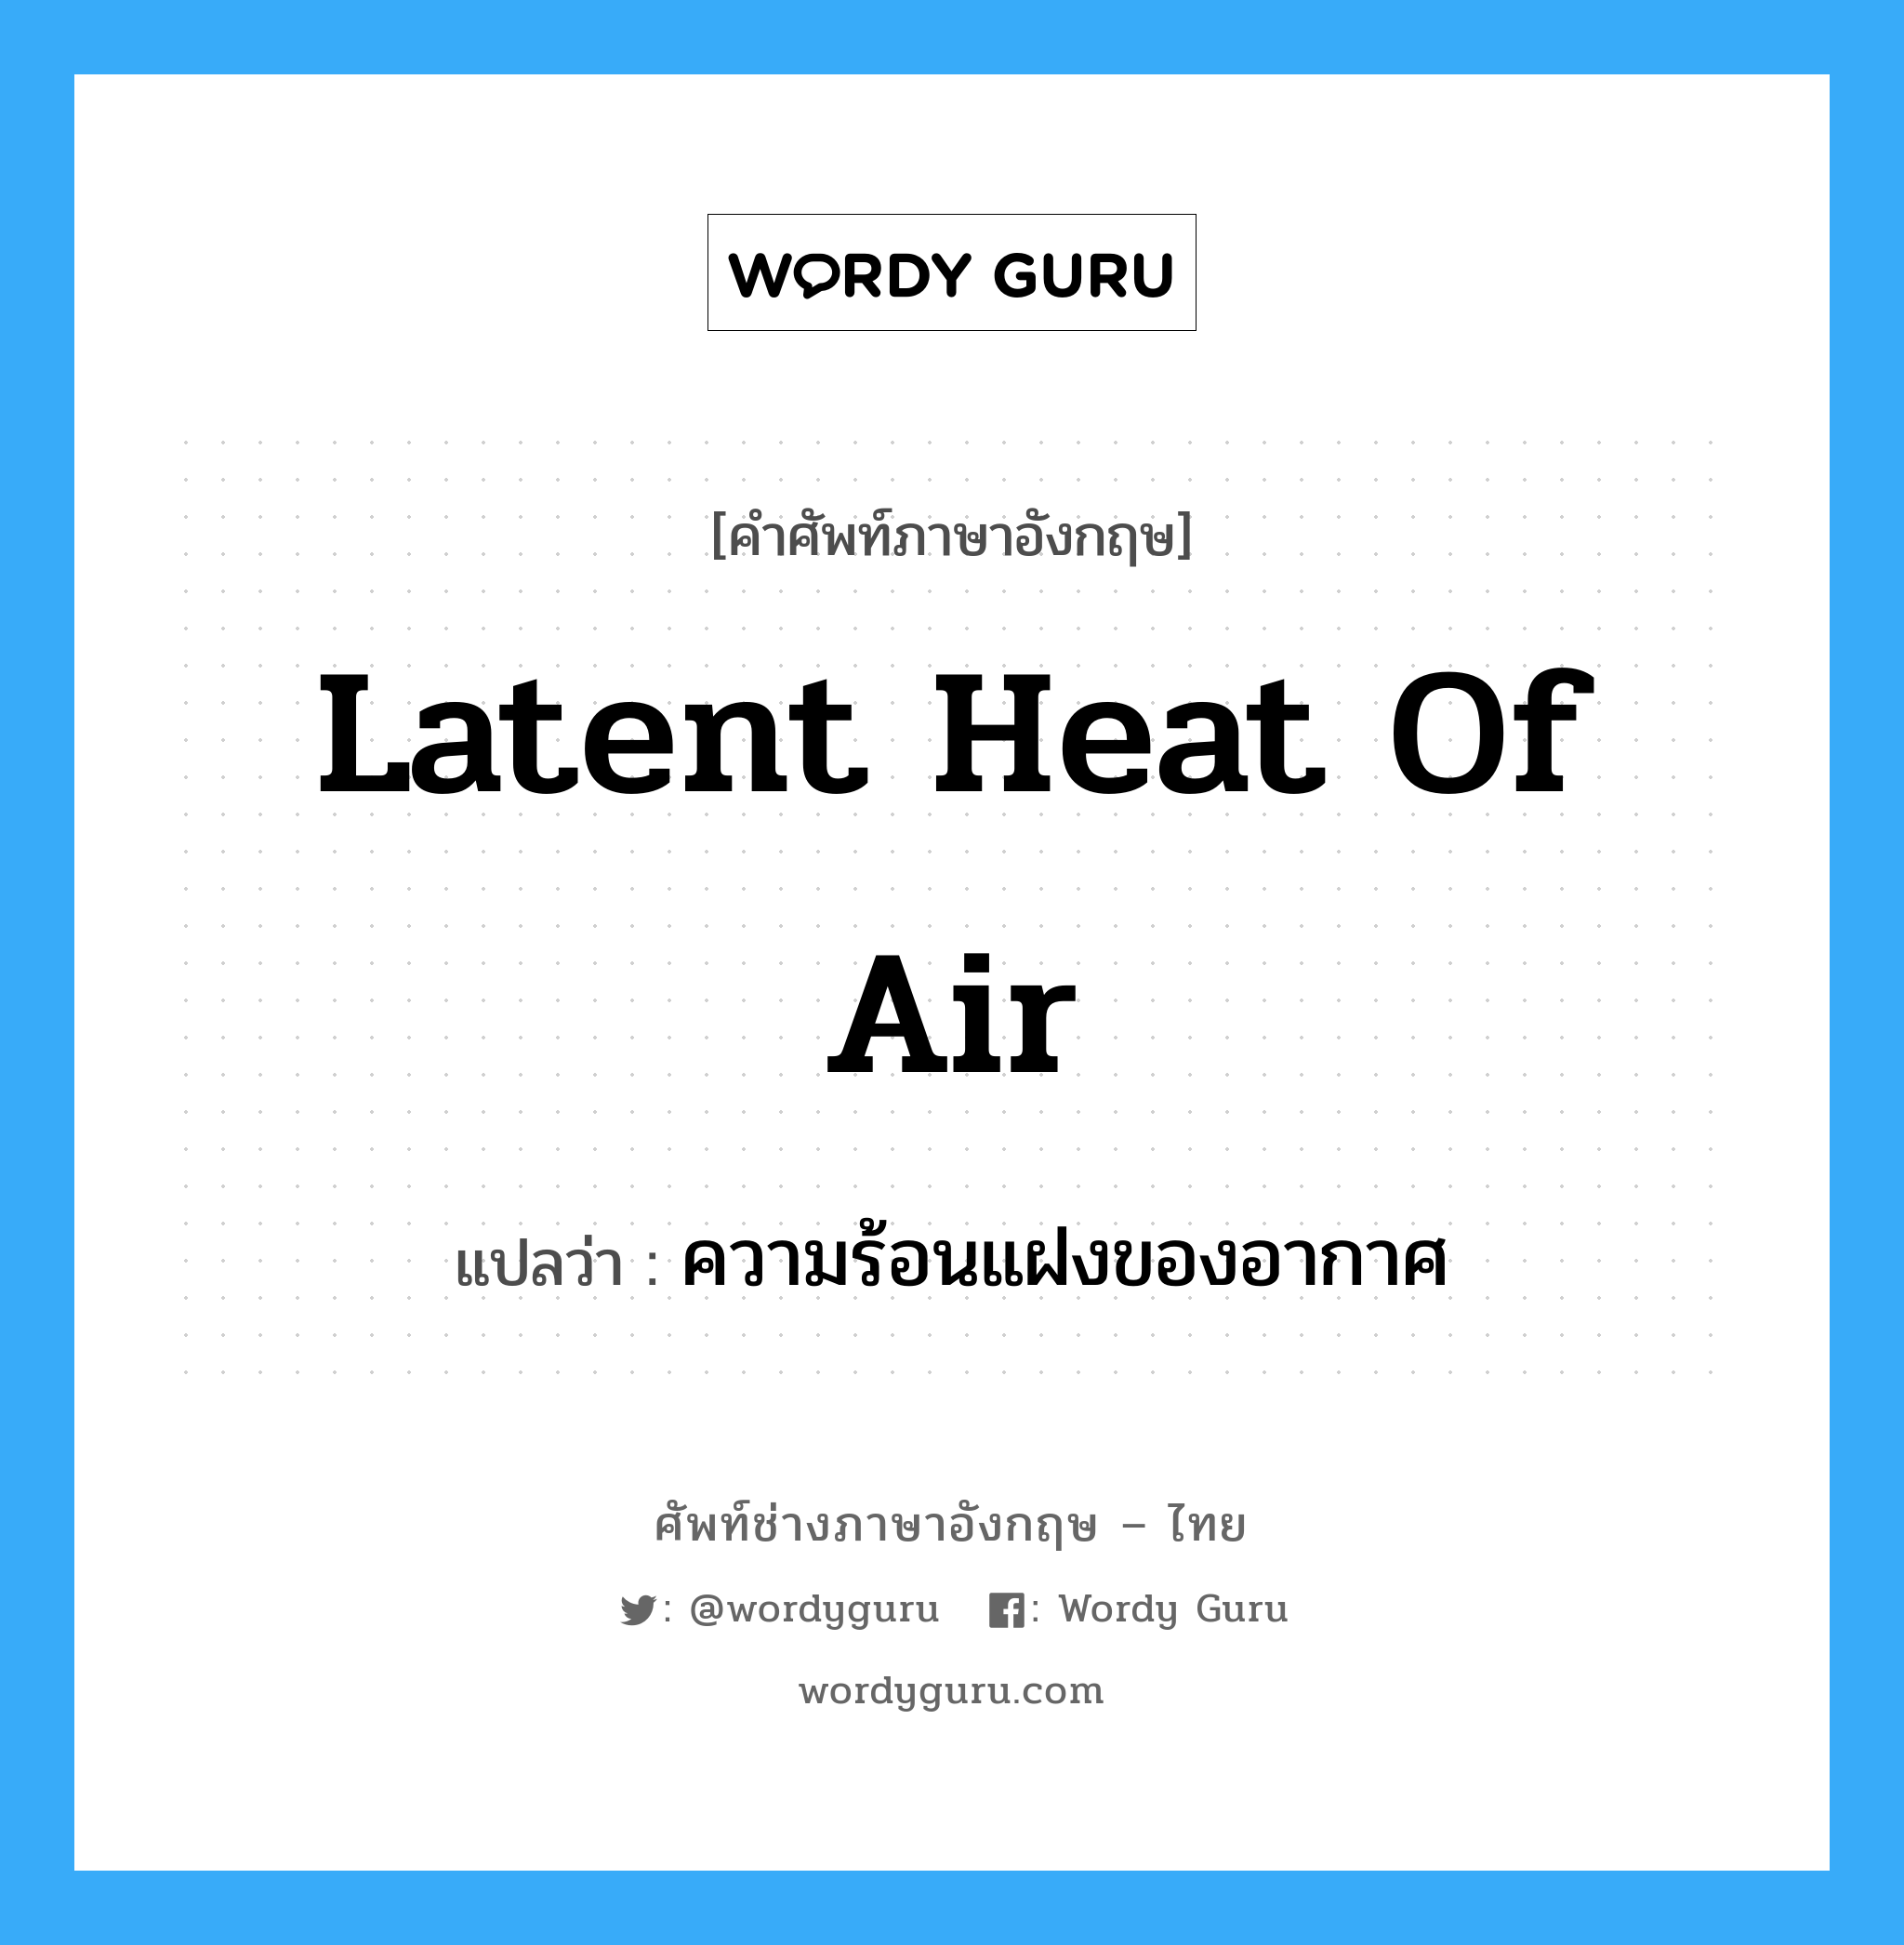 latent heat of air แปลว่า?, คำศัพท์ช่างภาษาอังกฤษ - ไทย latent heat of air คำศัพท์ภาษาอังกฤษ latent heat of air แปลว่า ความร้อนแฝงของอากาศ